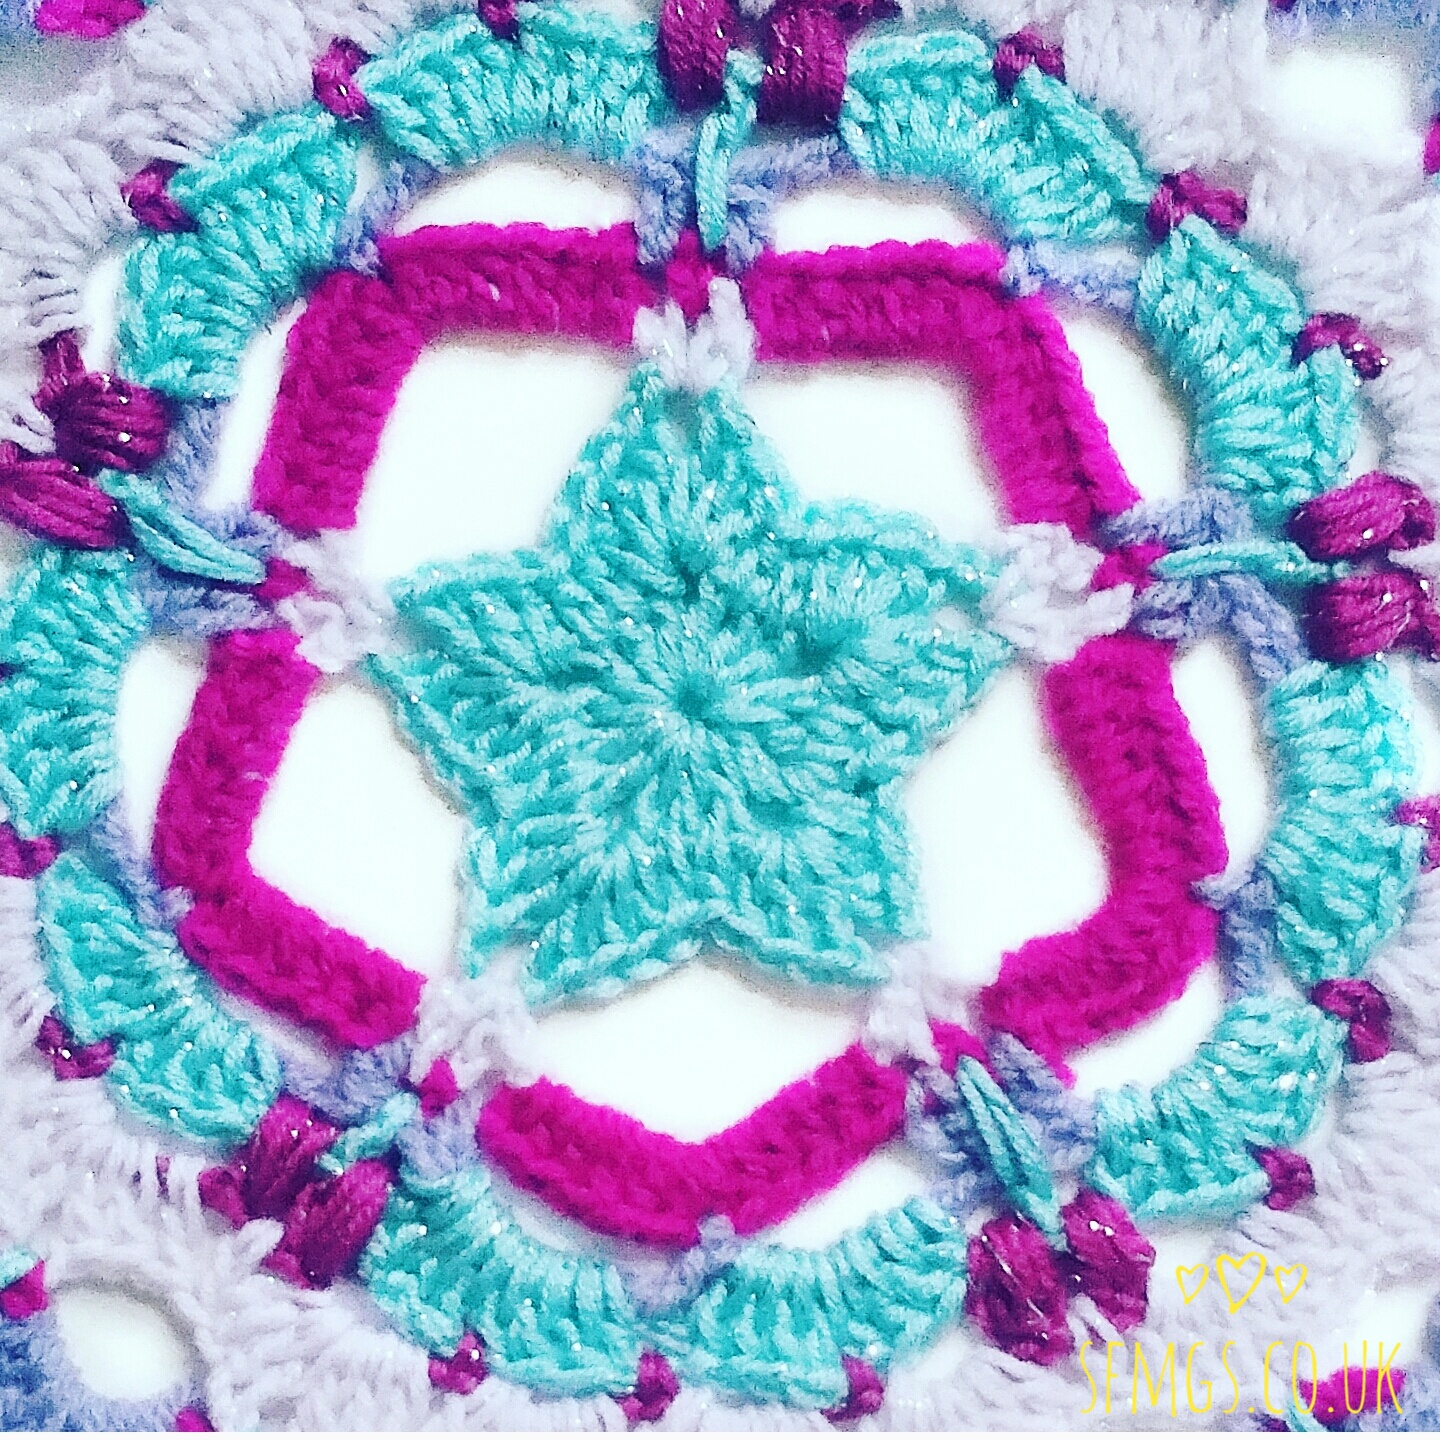 Star Crochet Pattern Set Free My Gypsy Soul A Crochet Craft Blog Festive Sparkle Star